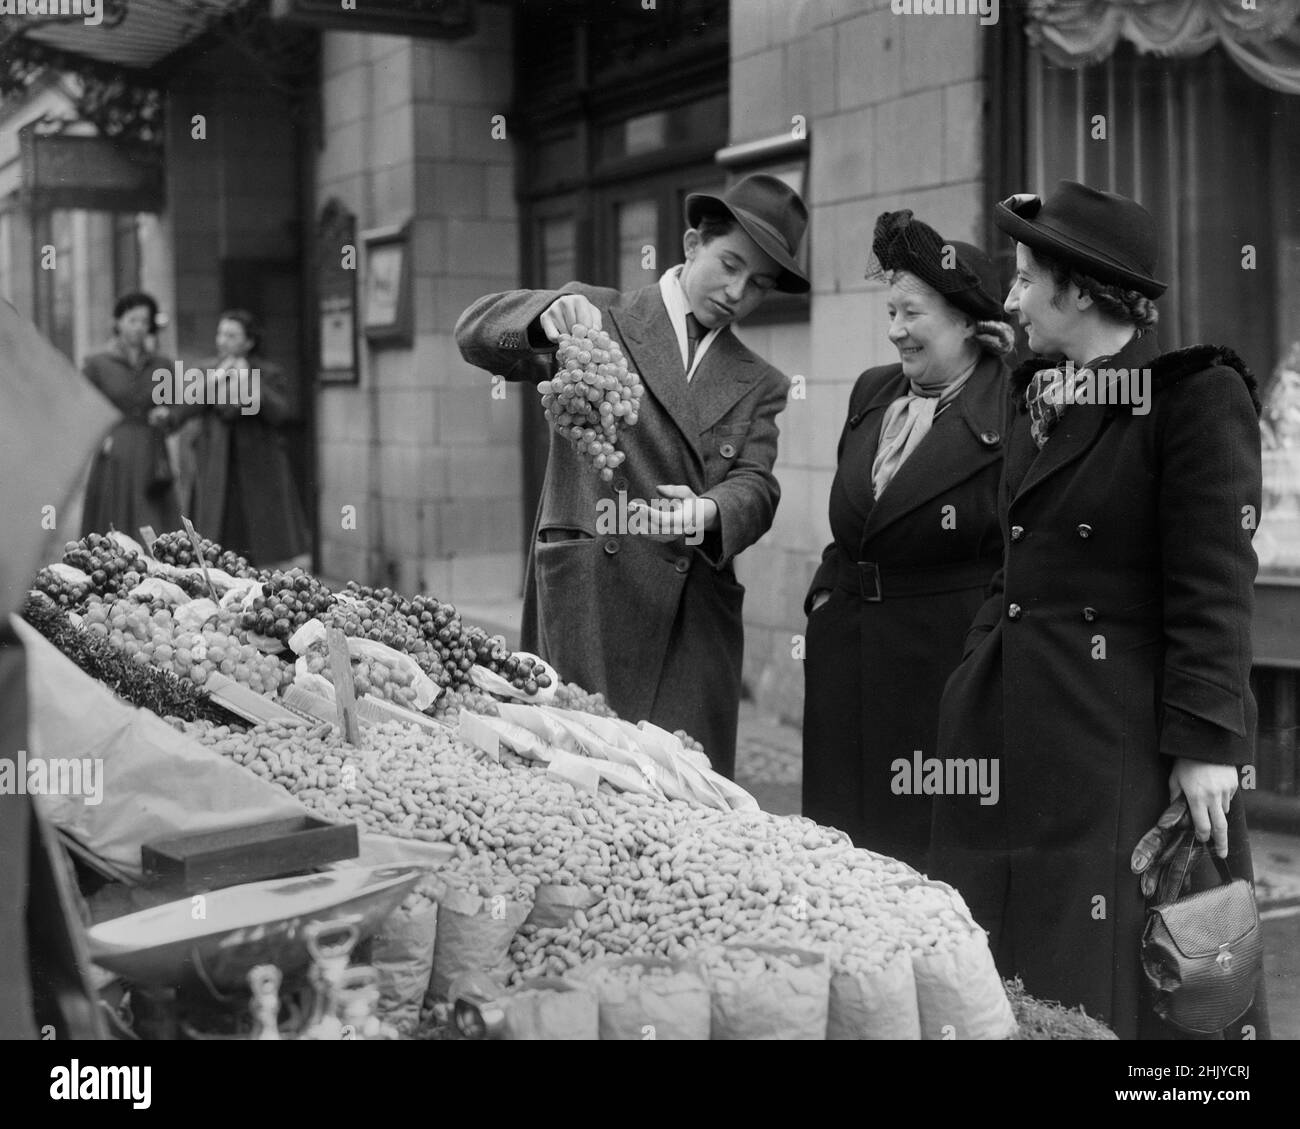 LONDRES : un barrow vend une bande de raisins à deux femmes d’âge moyen, dans sa cabine de fruits et légumes, sur le Strand de Londres dans les années 1940.Crédit : la collection d'archives DL/Alamy Banque D'Images